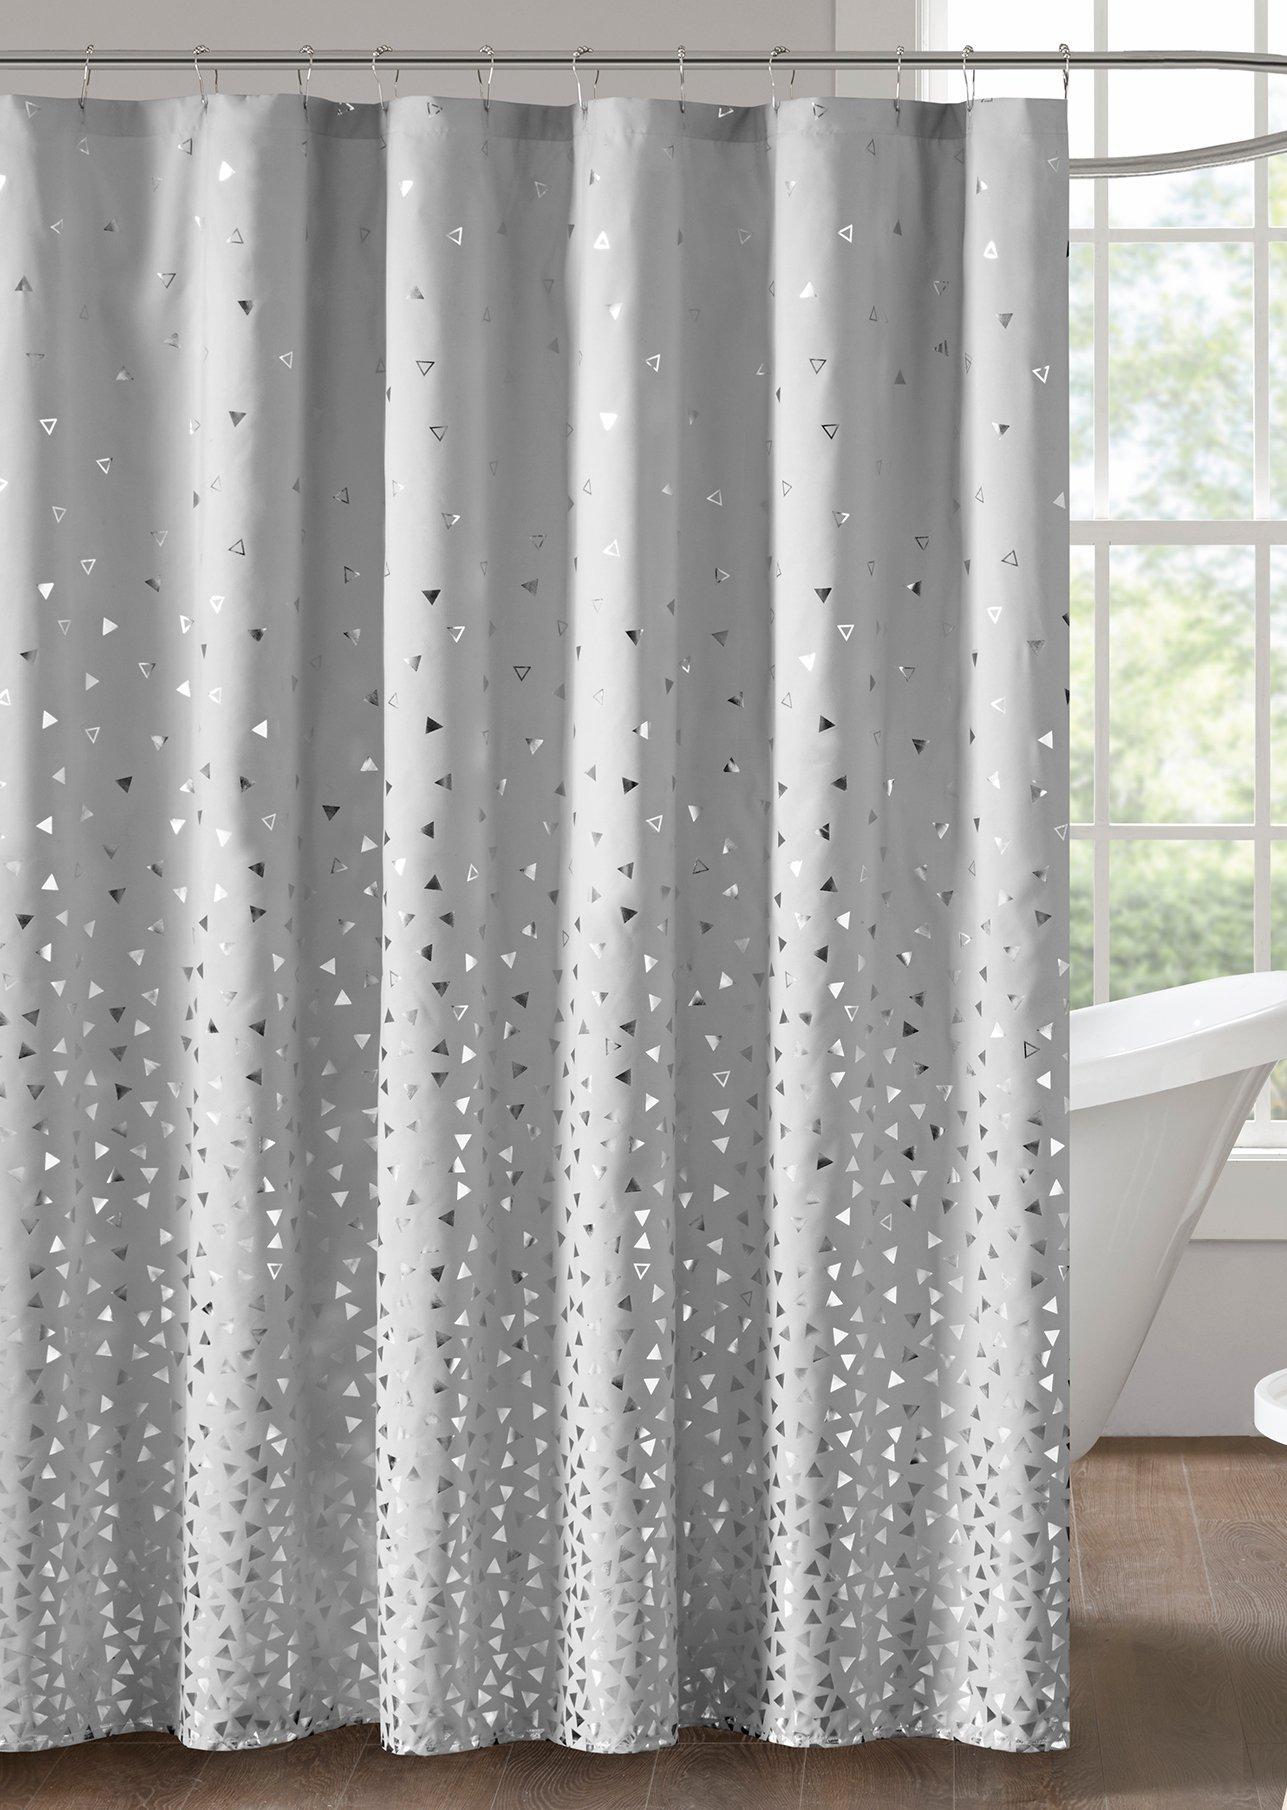 Intelligent Design Zoey Shower Curtain